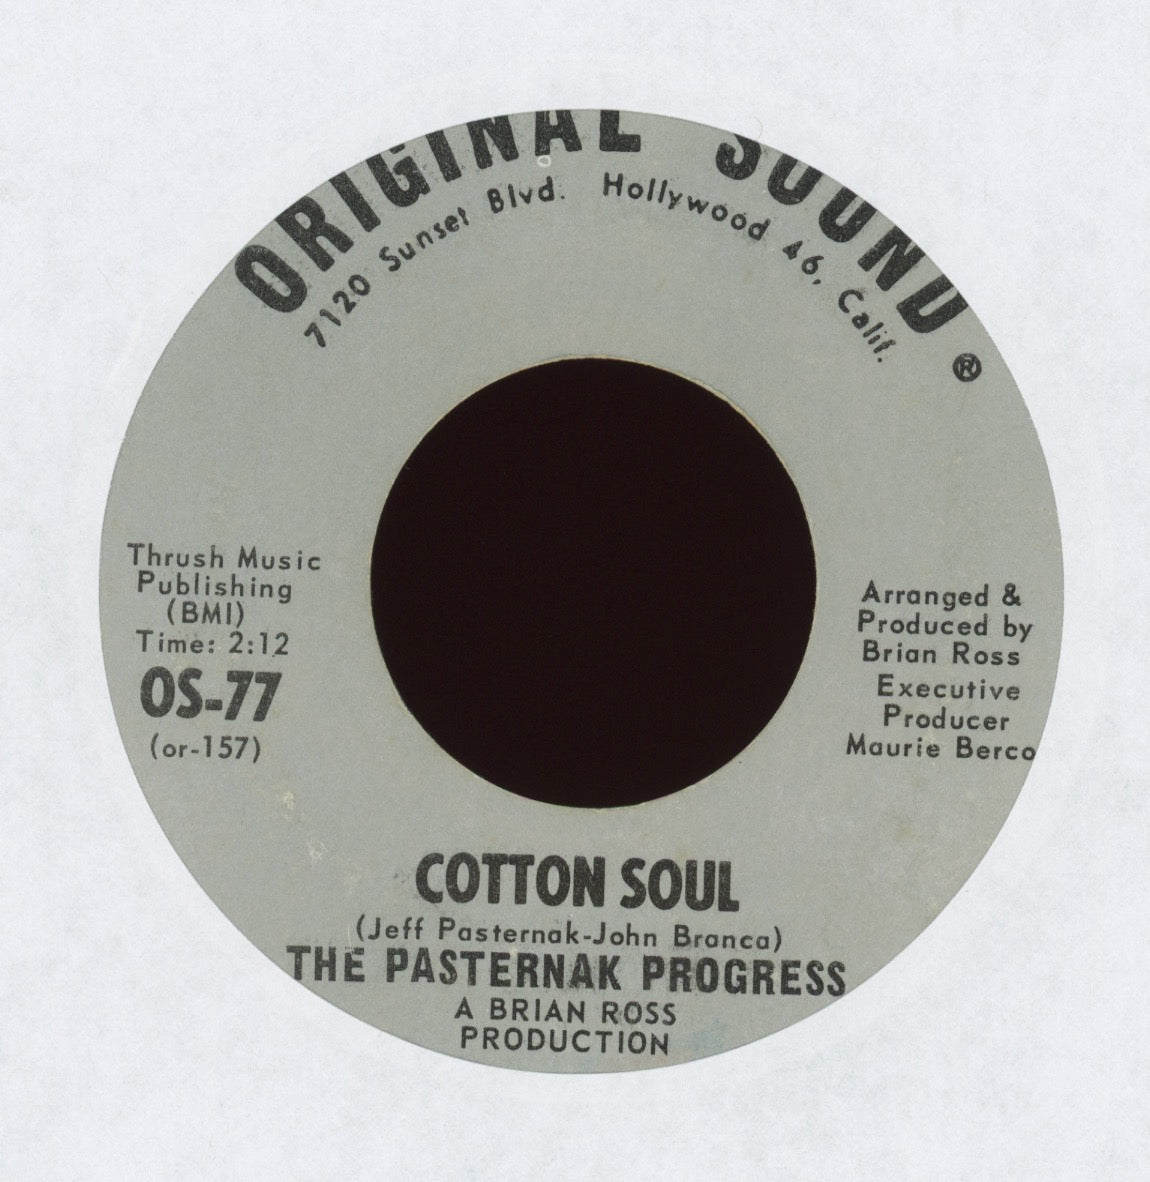 The Pasternak Progress - Cotton Soul on Original Sound Psych Rock 45